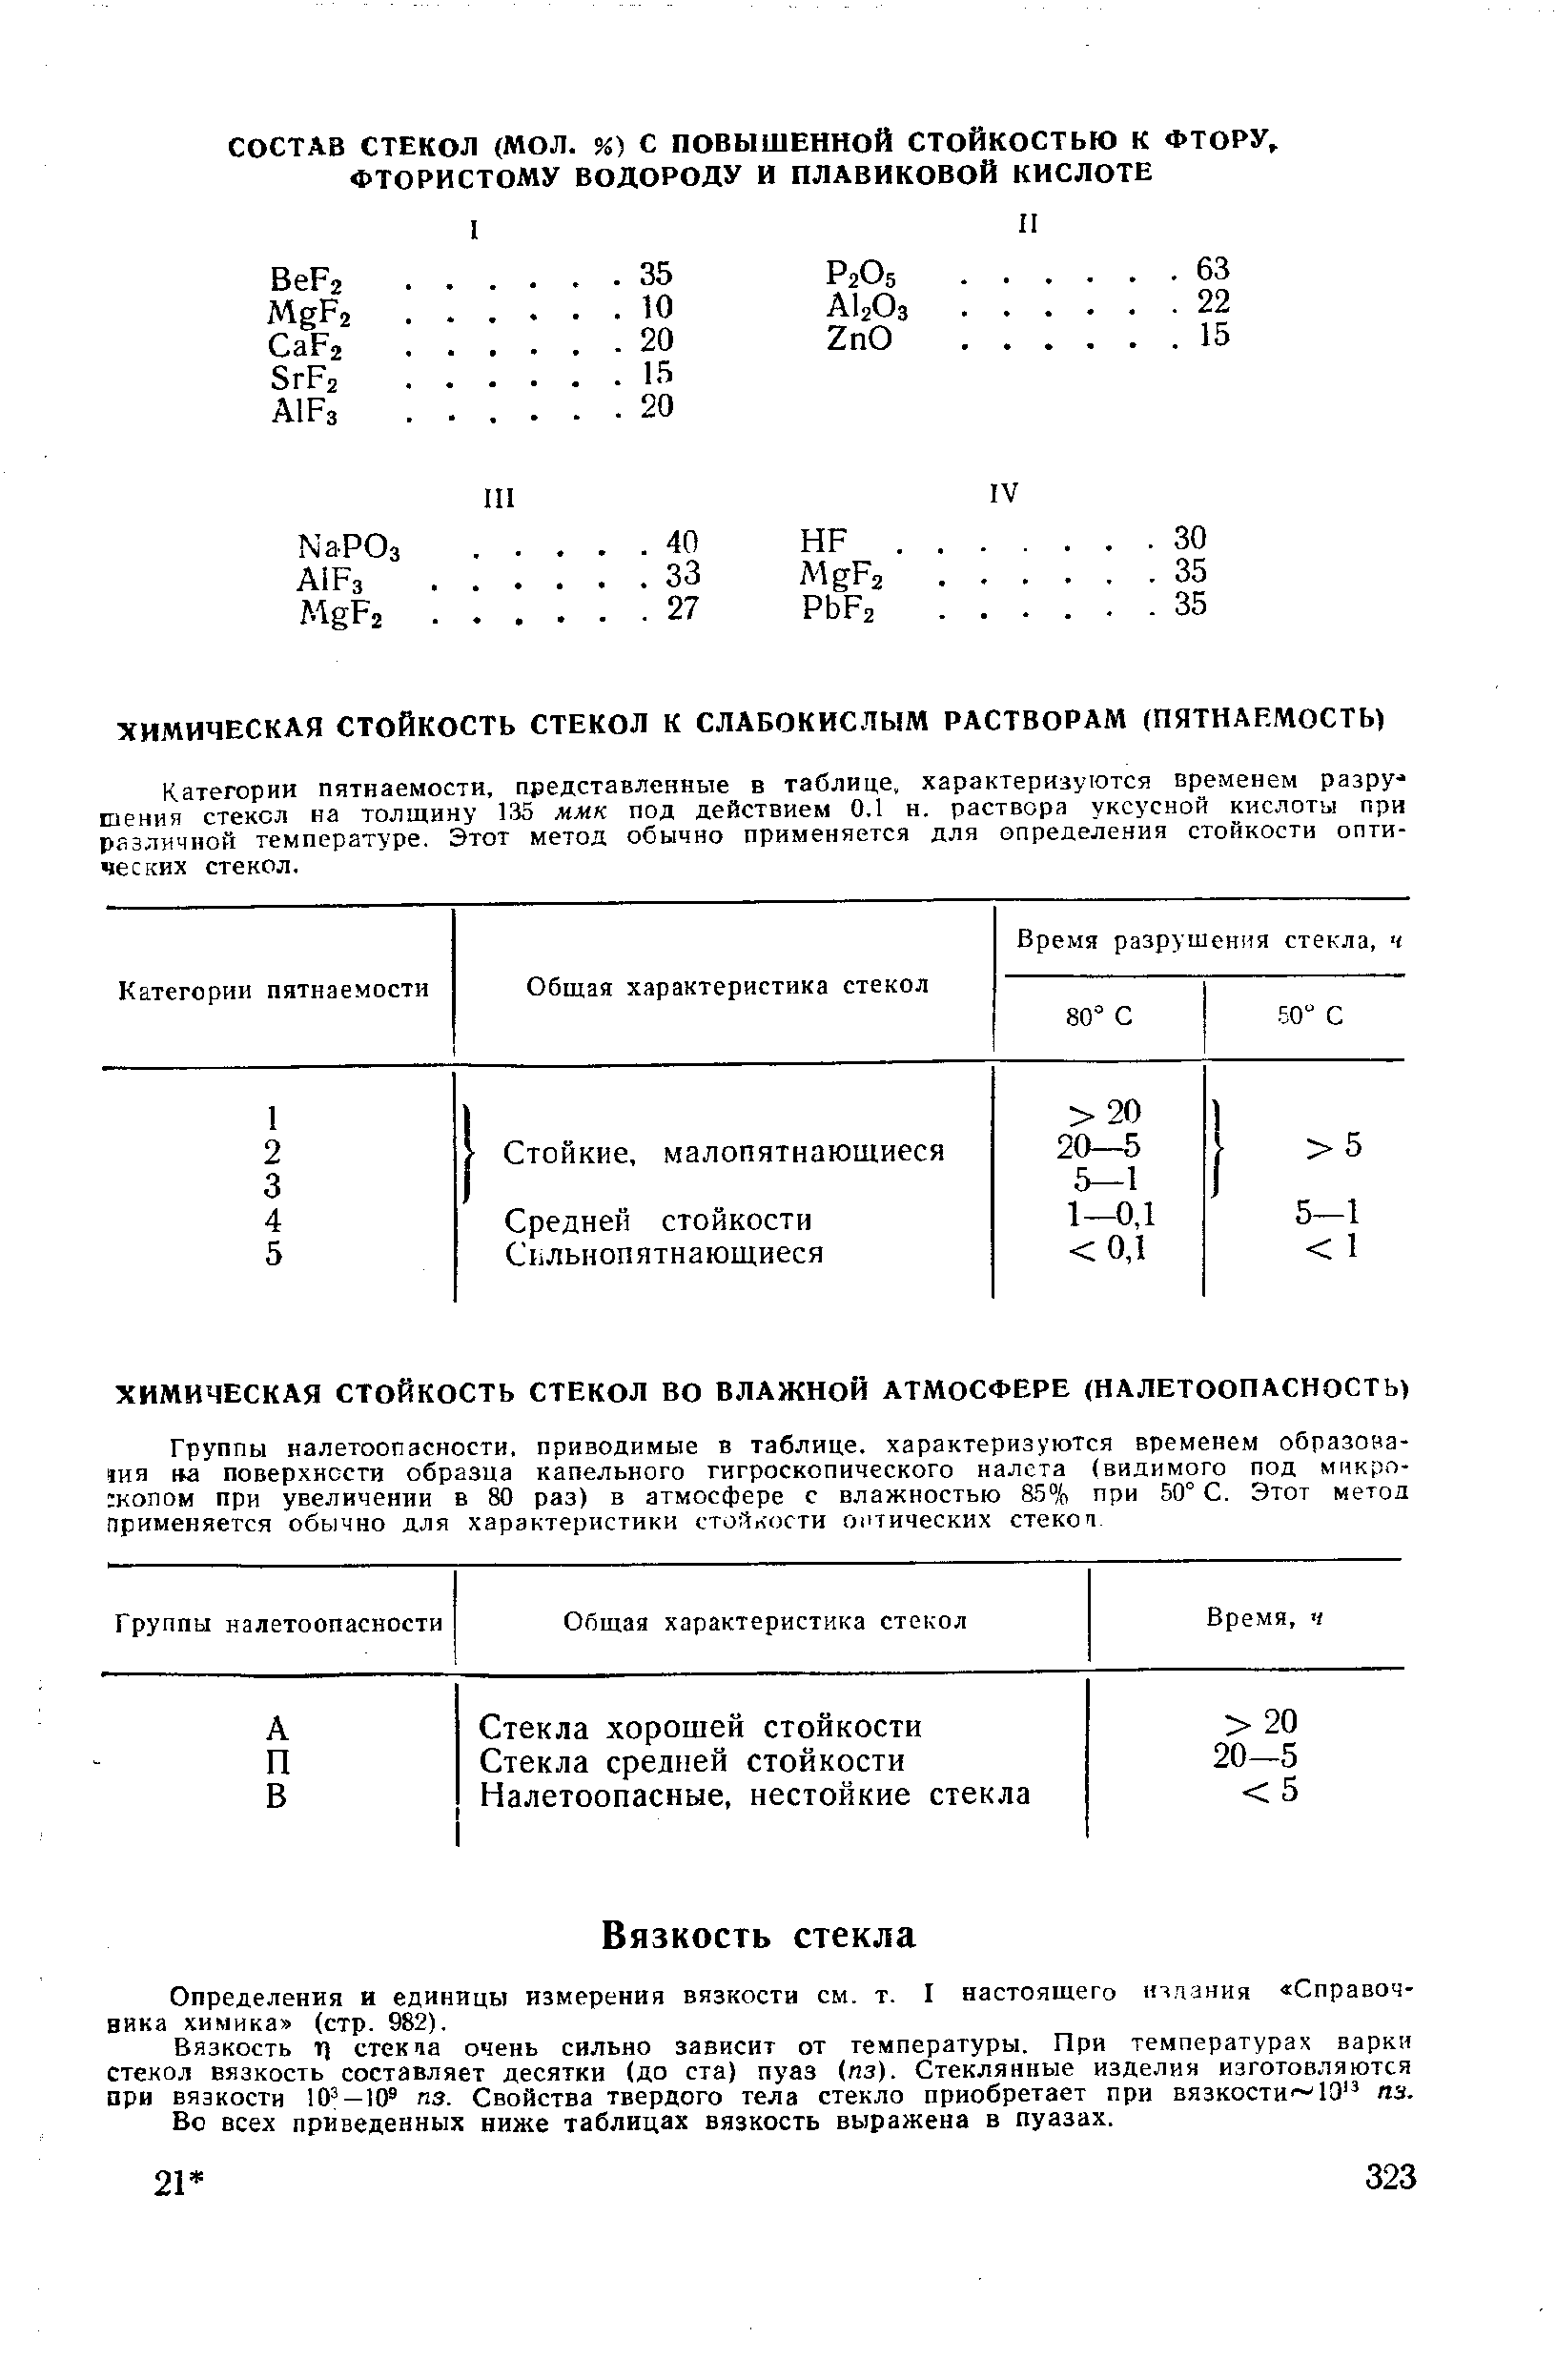 Определения и единицы измерения вязкости см. т. I настоящего издания Справочника химика (стр. 982).